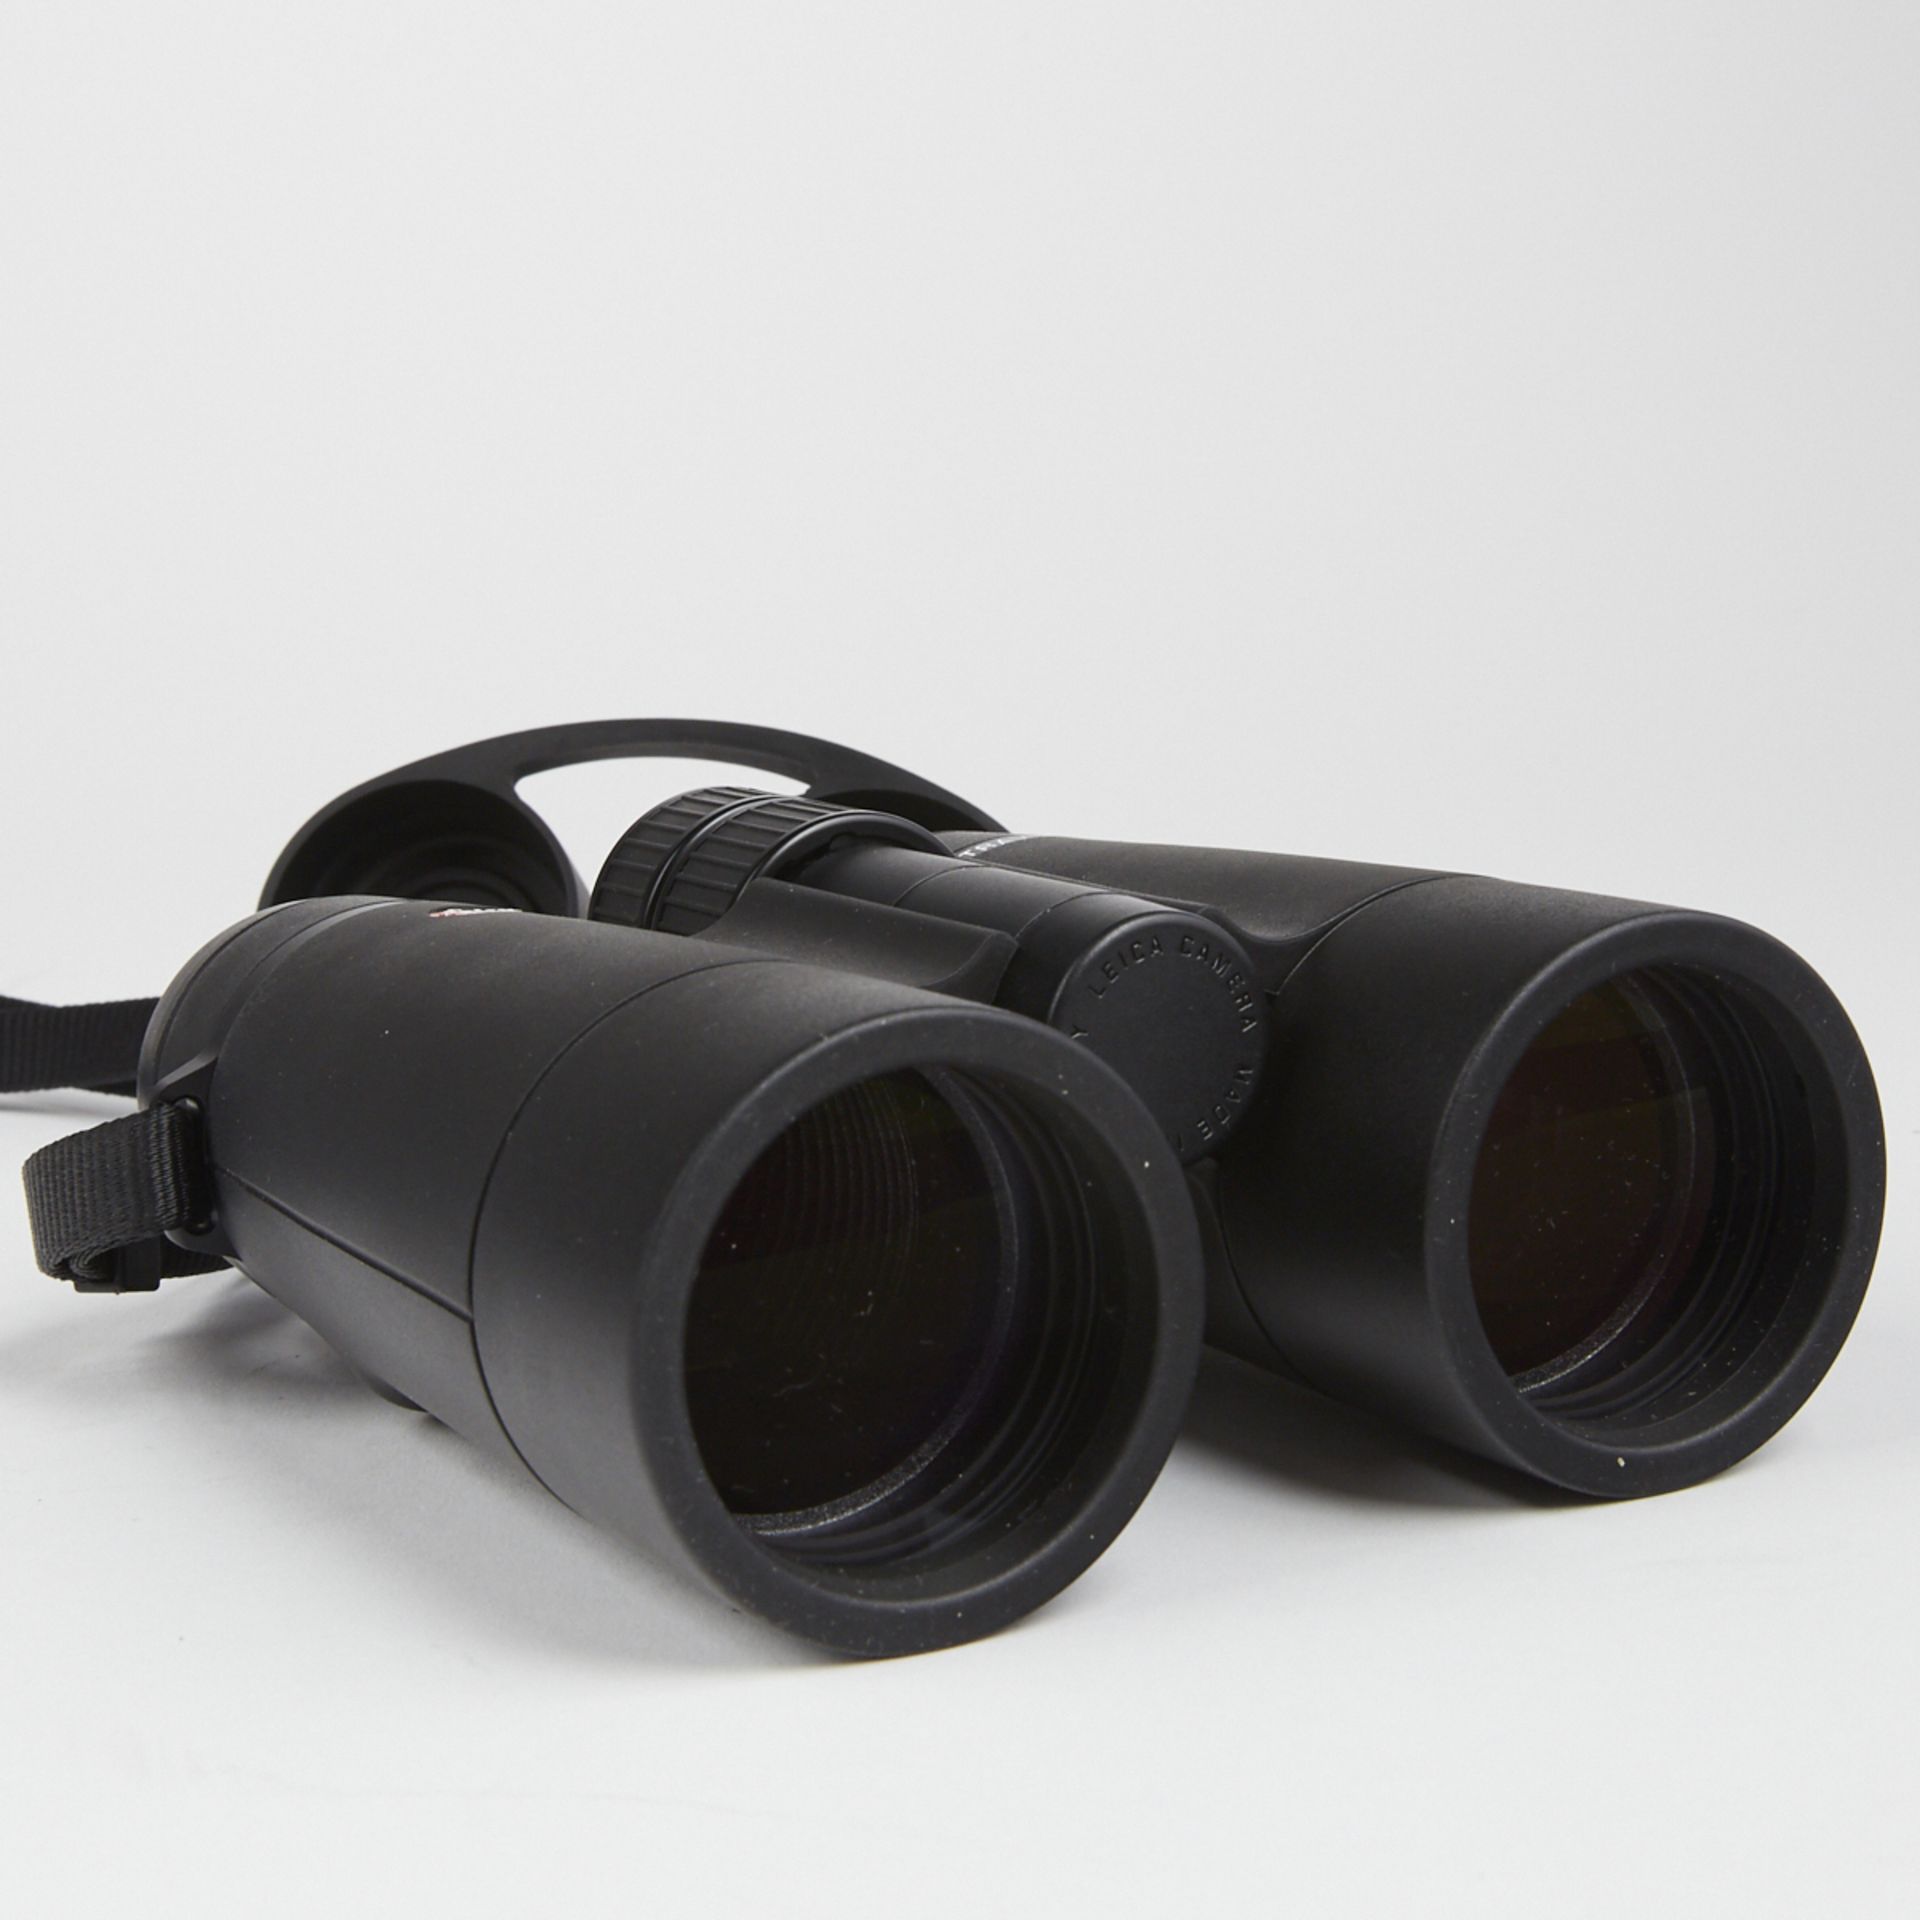 Leica Ultravid 8x42 HD Binoculars - New In Box - Image 5 of 10